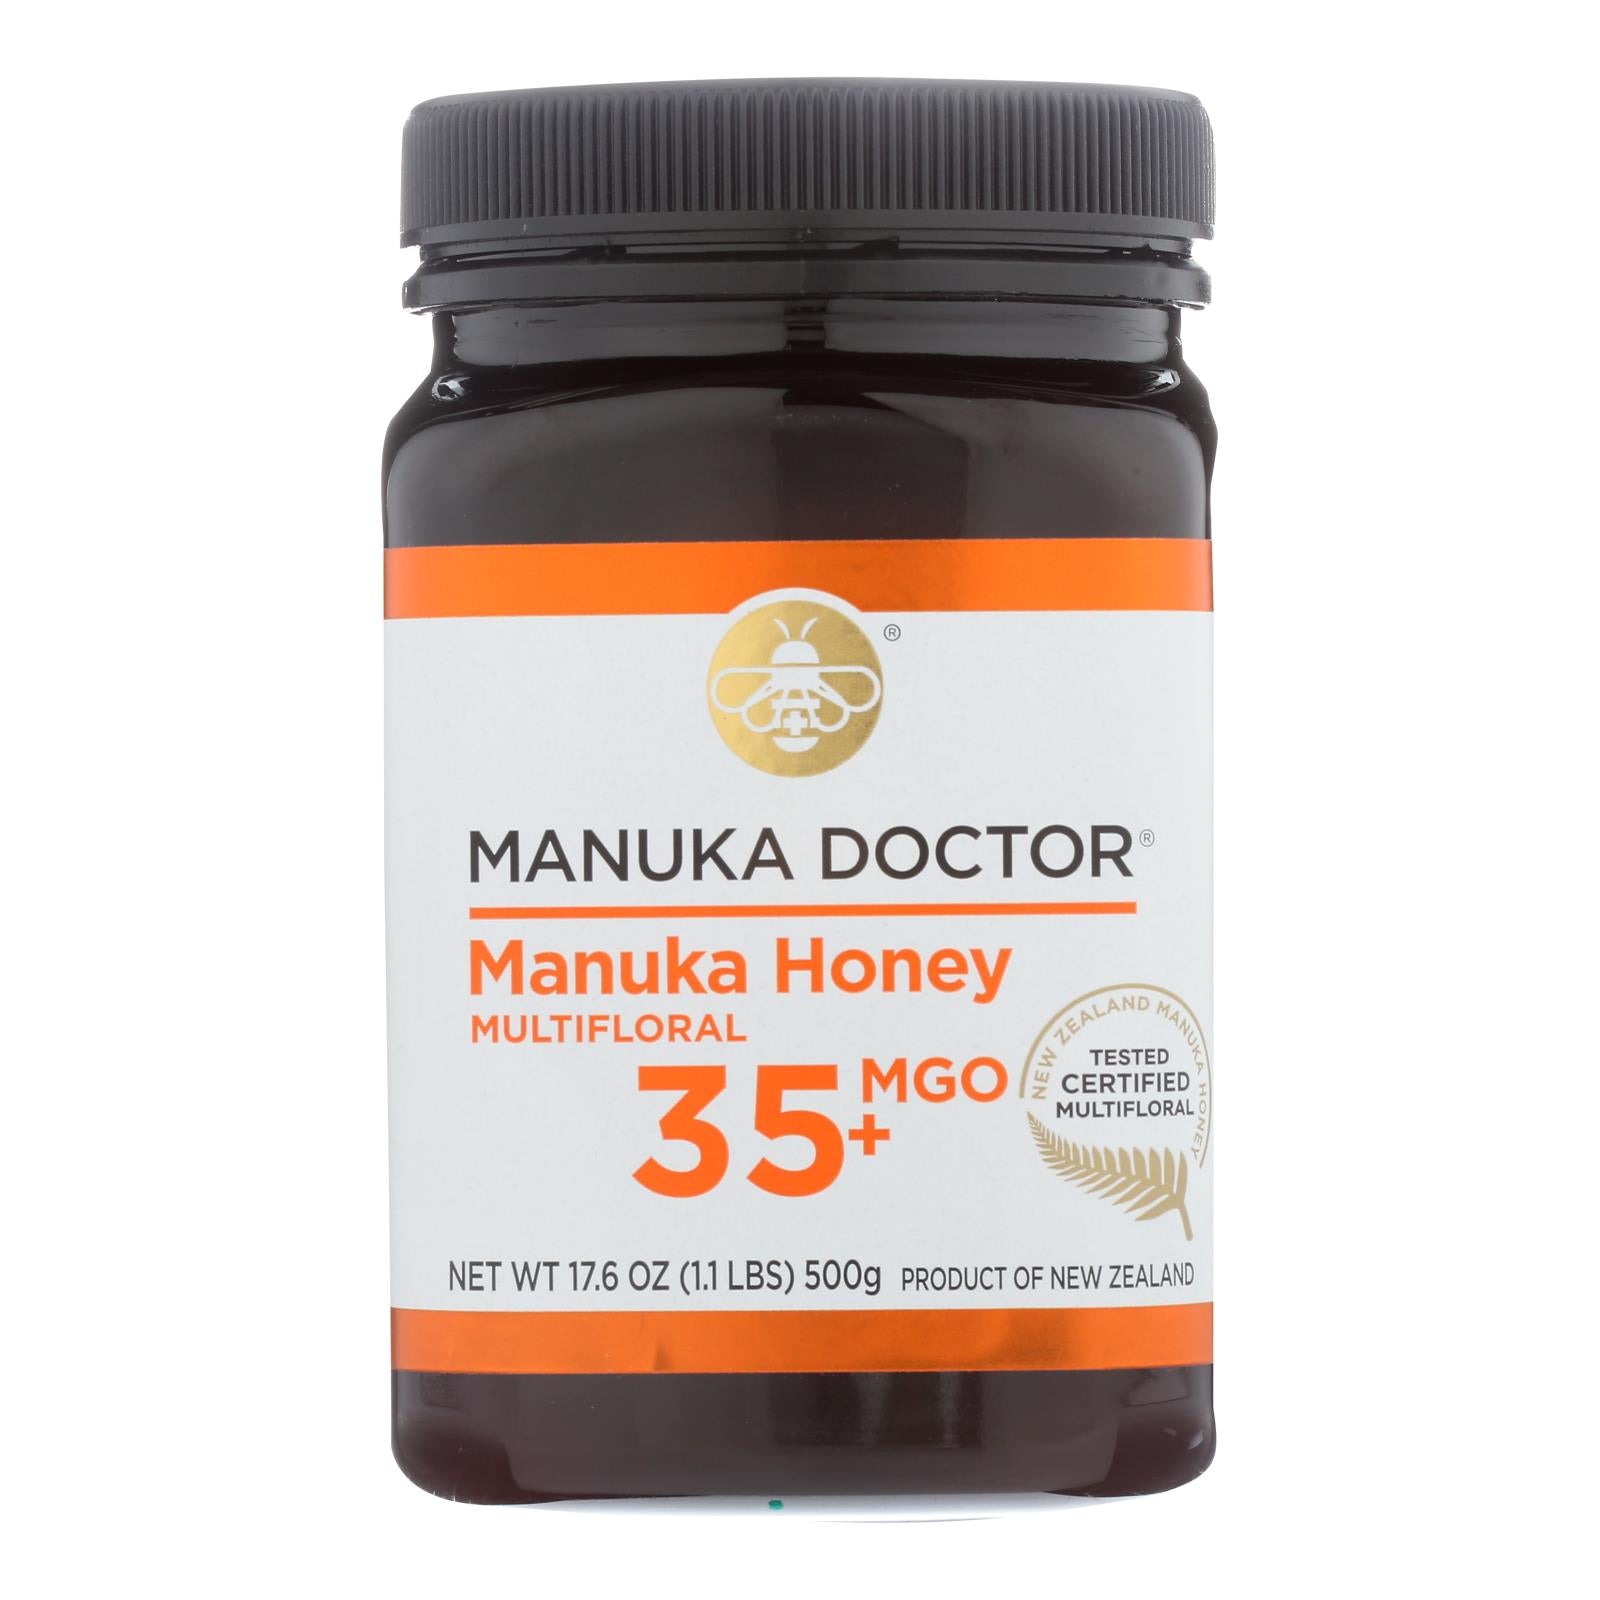 Docteur Manuka, Manuka Doctor - Miel de Manuka Mf Mgo35+ 500g - Carton de 6-17.6 OZ (Pack de 6)